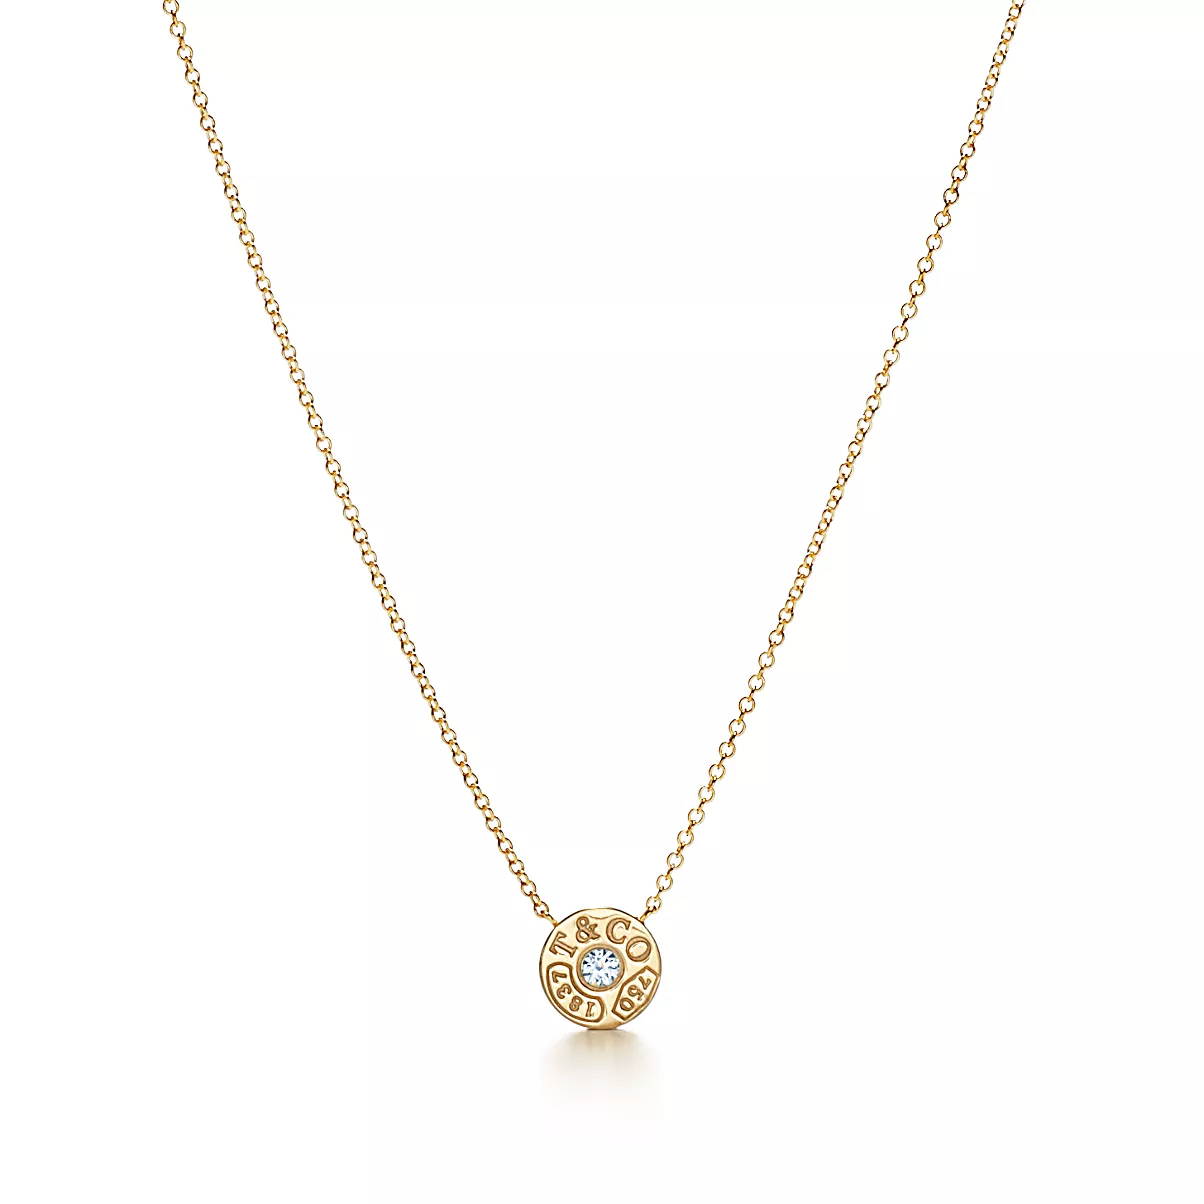 Tiffany 1837 Pendant w/Chain 18K 옐로우 골드 라운드 브릴리언트 다이아몬드 One Scale